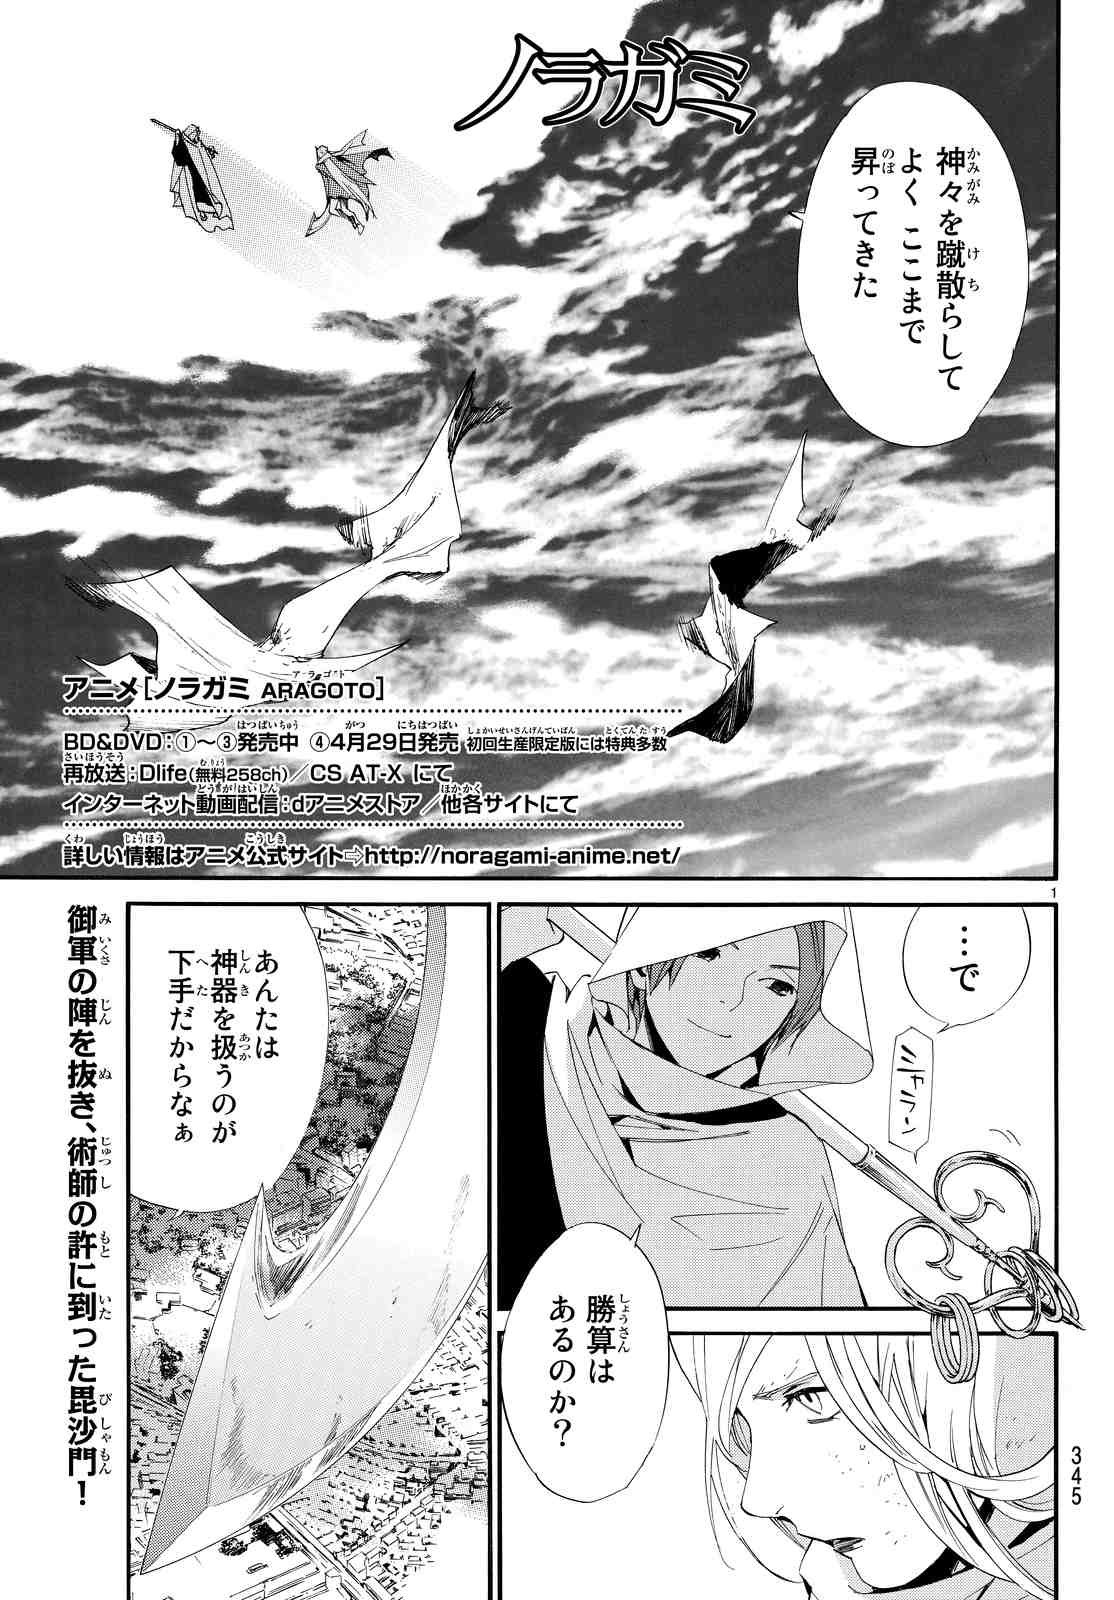 ノラガミ 71話 漫画村 まんがまとめ 無料コミック漫画 ネタバレ